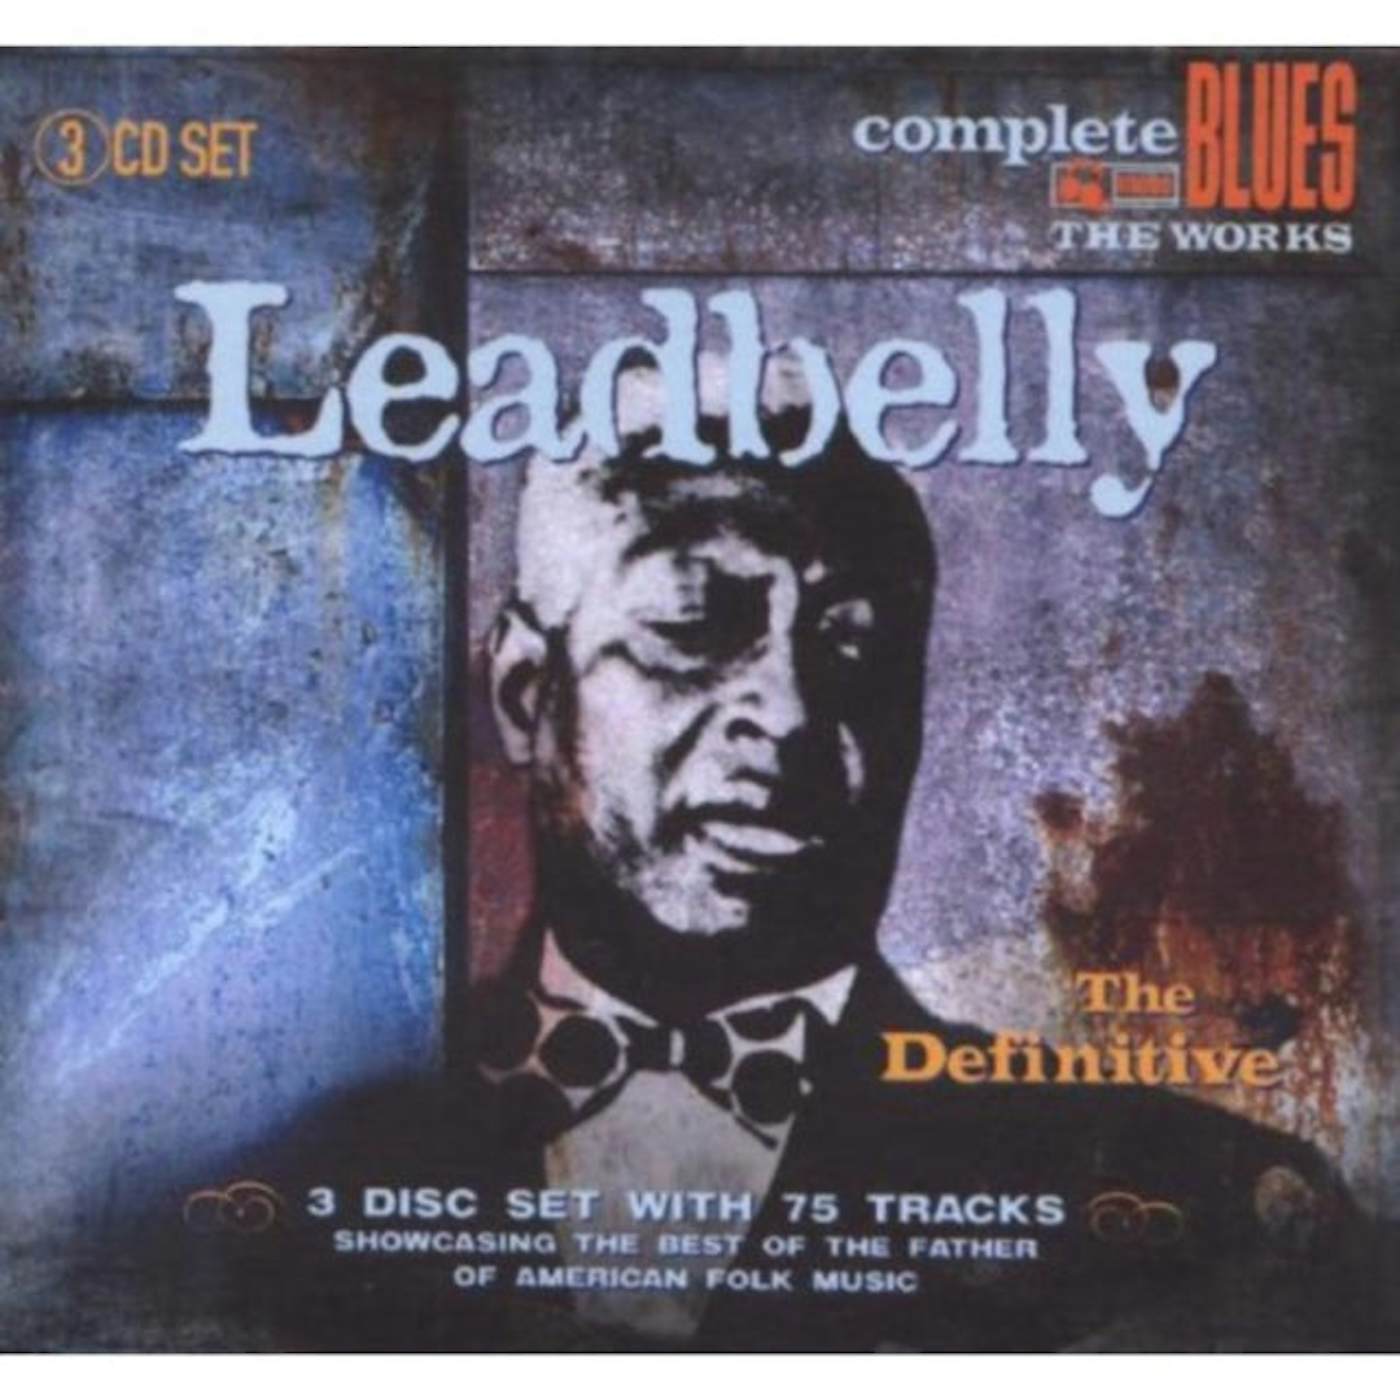 Leadbelly CD - The Definitive Leadbelly